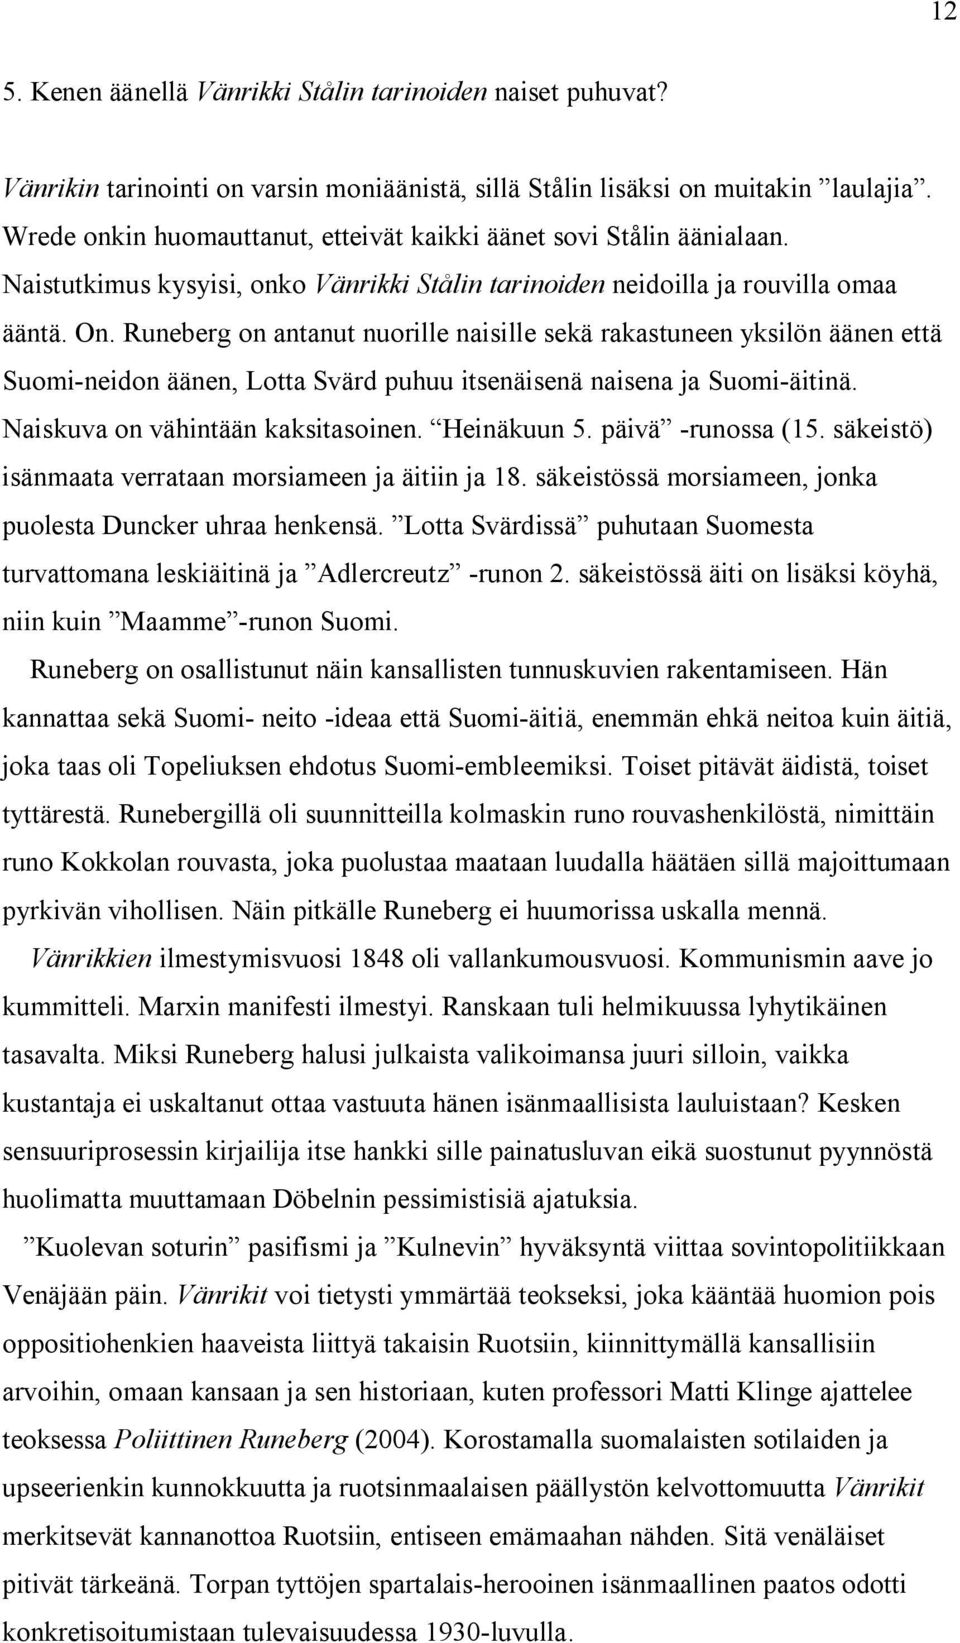 Runeberg on antanut nuorille naisille sekä rakastuneen yksilön äänen että Suomi-neidon äänen, Lotta Svärd puhuu itsenäisenä naisena ja Suomi-äitinä. Naiskuva on vähintään kaksitasoinen. Heinäkuun 5.